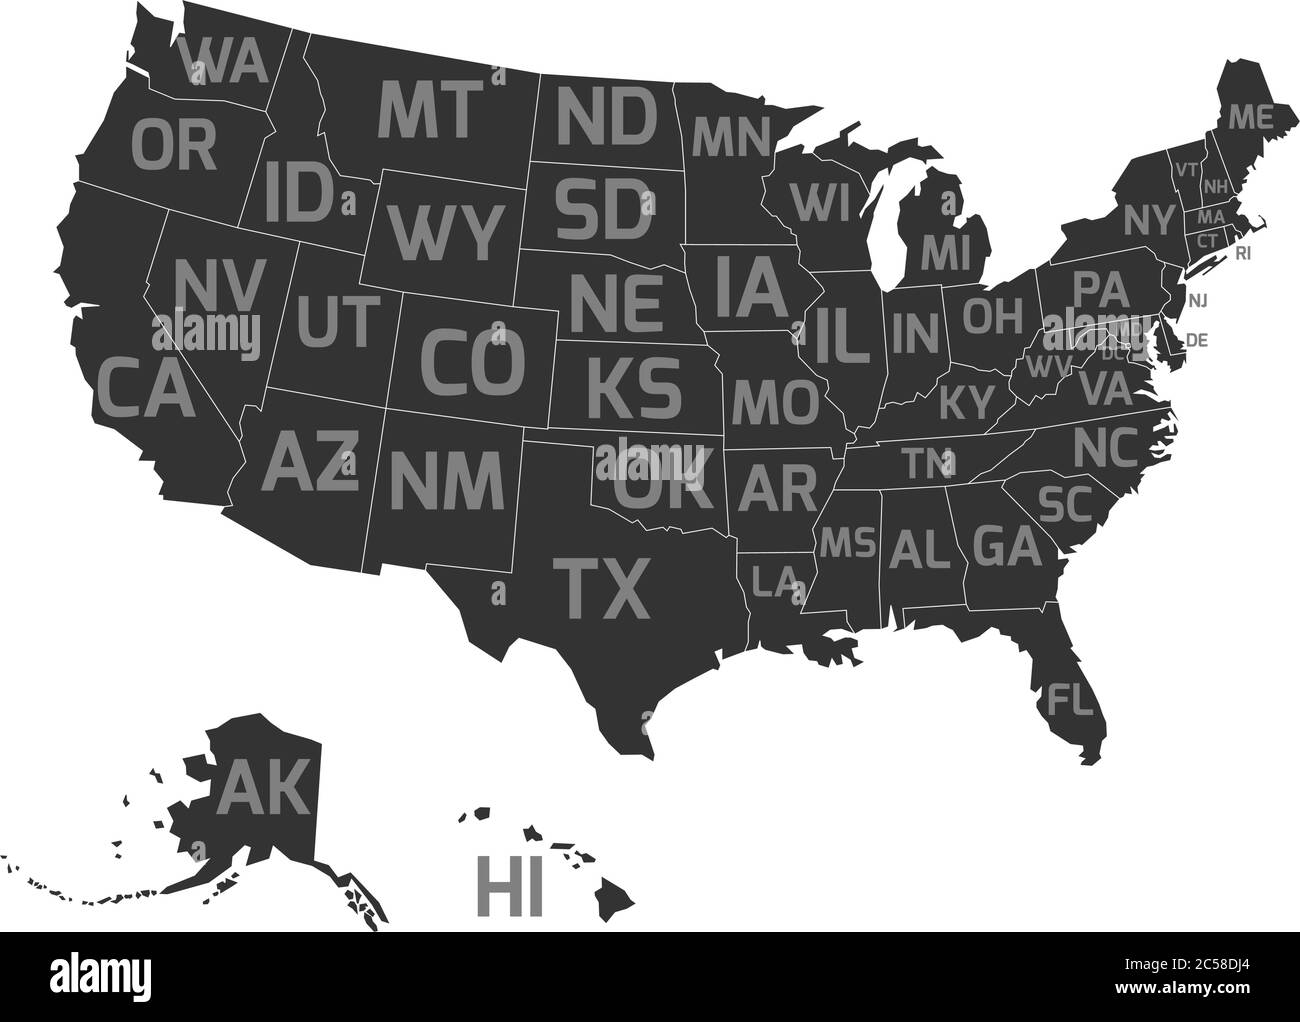 Carte des États-Unis d'Amérique, alias USA, avec codes postaux d'abréviation des États-Unis. Carte vectorielle plate simplifiée en gris foncé avec étiquettes gris clair sur fond blanc. Illustration de Vecteur